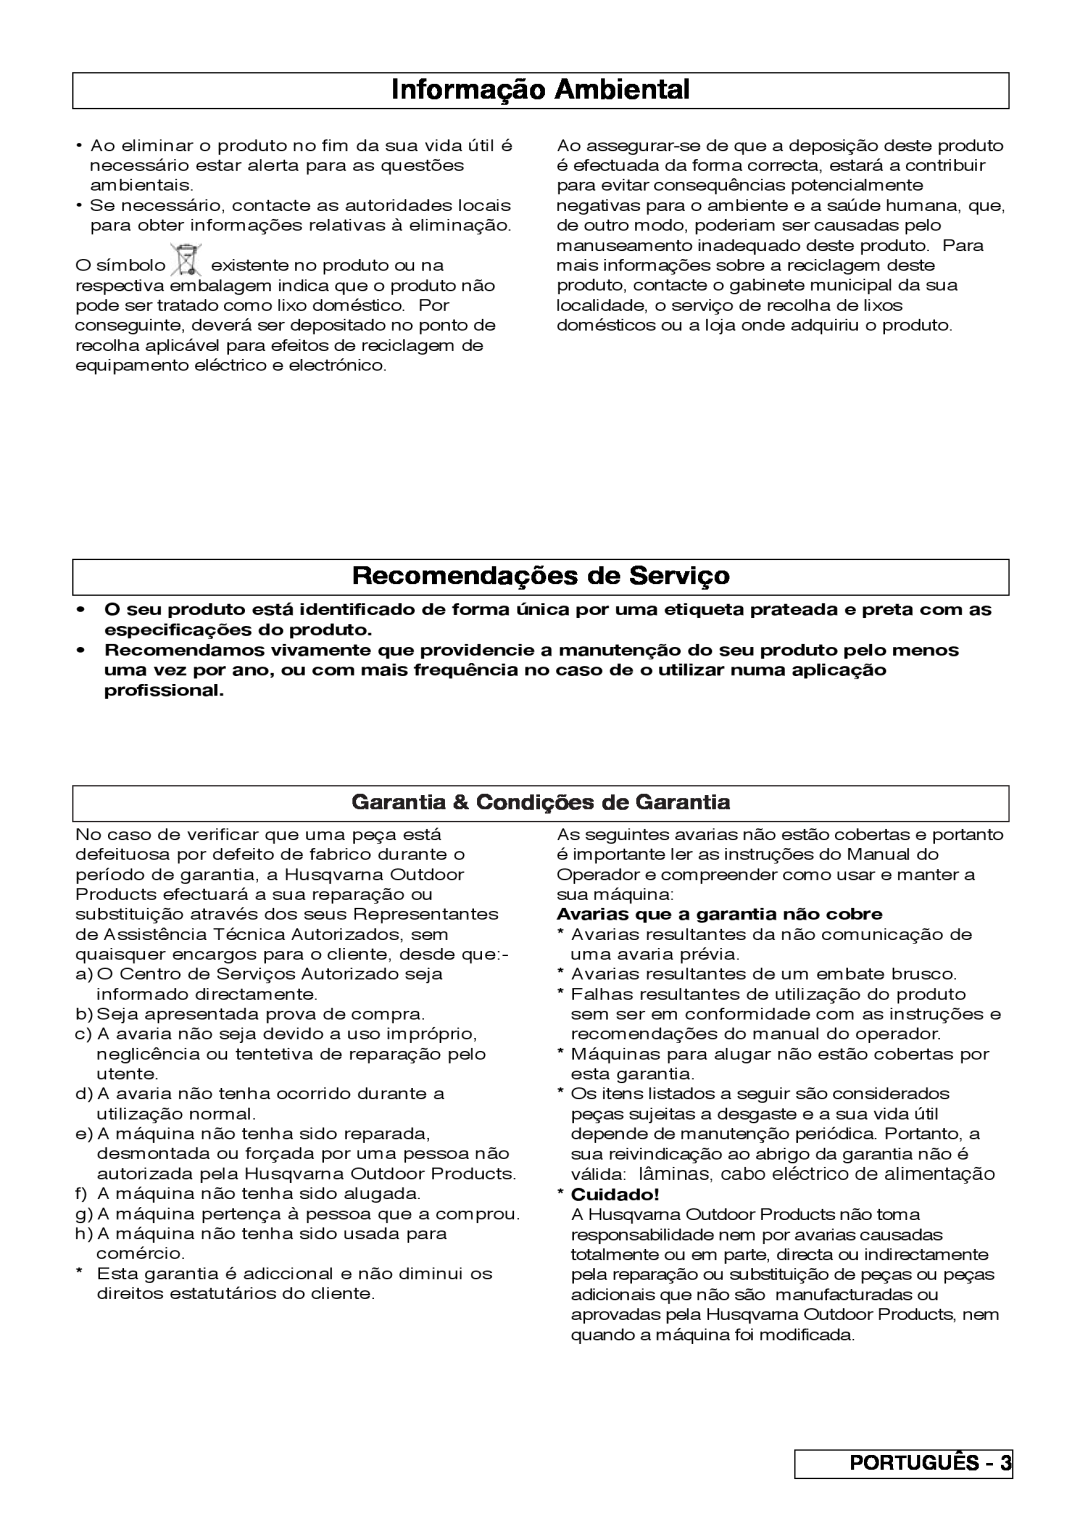 Flymo VM032 manual Informação Ambiental, Recomendações de Serviço, Garantia & Condições de Garantia, Português 